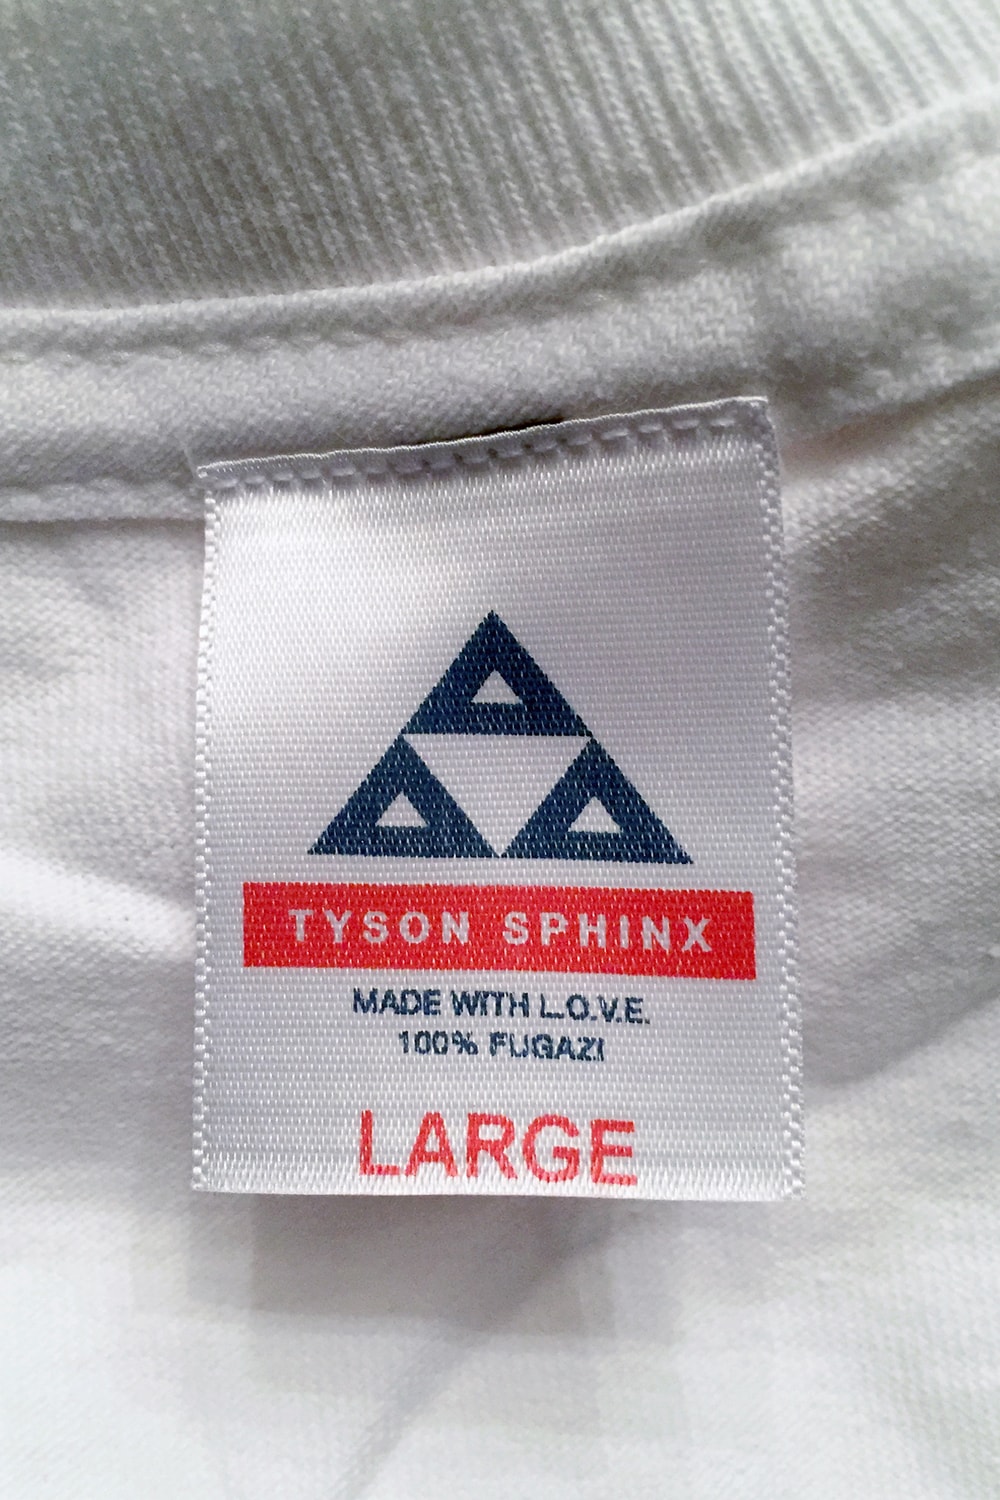 타이슨 스핑크스 티셔츠 컬렉션 팔라스 슈프림 패러디 palace supreme parody tyson sphinx t-shirt collection 2017